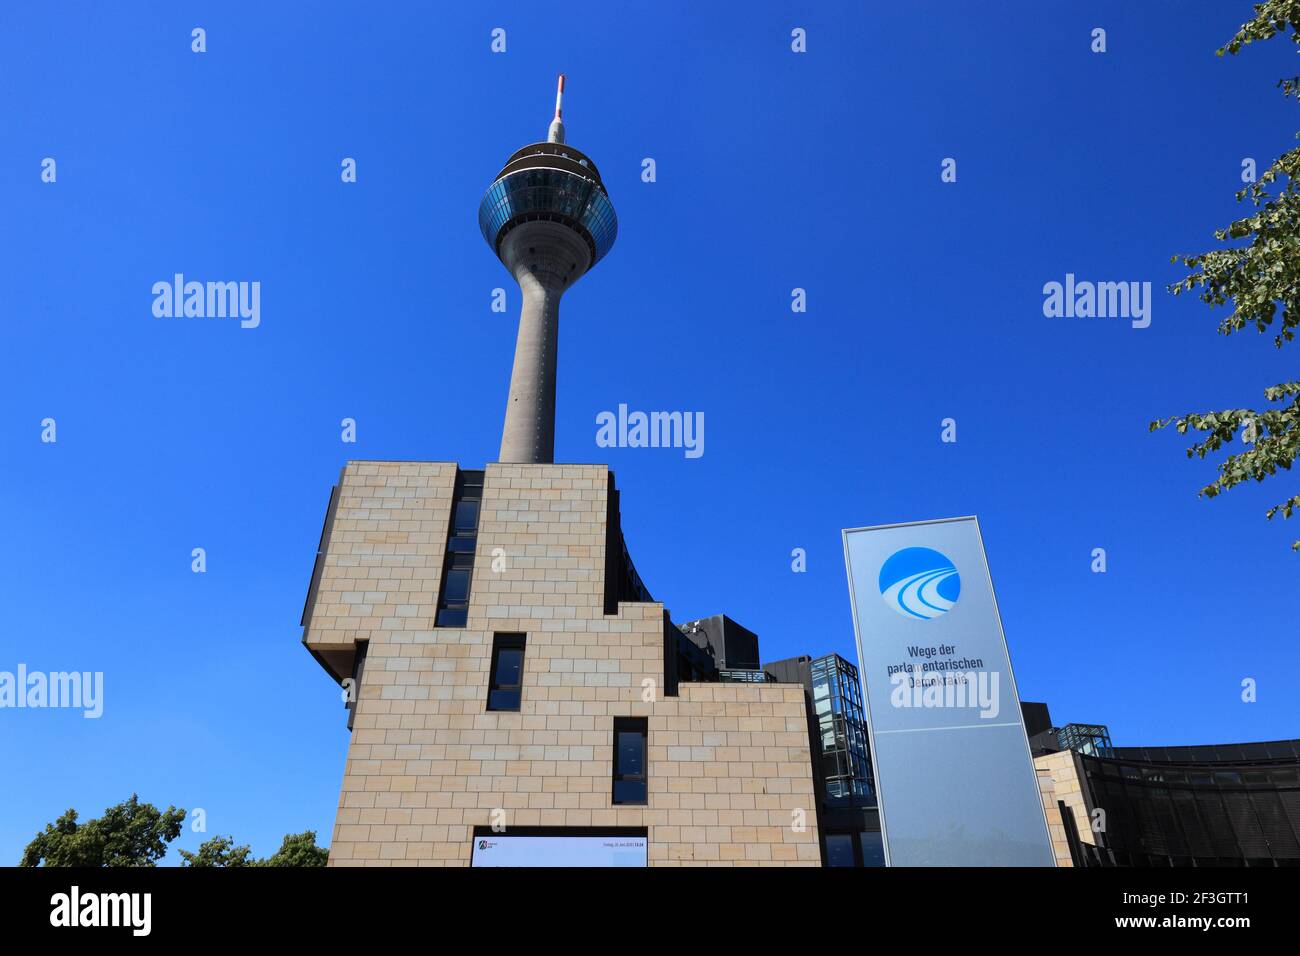 Rheinturm, Landtagsgebäude Nordrhein-Westfalen, Haus des Landtages, Stromstraße, Regierungsviertel, Düsseldorf, Nordrhein-Westfalen, Deutschland Stock Photo